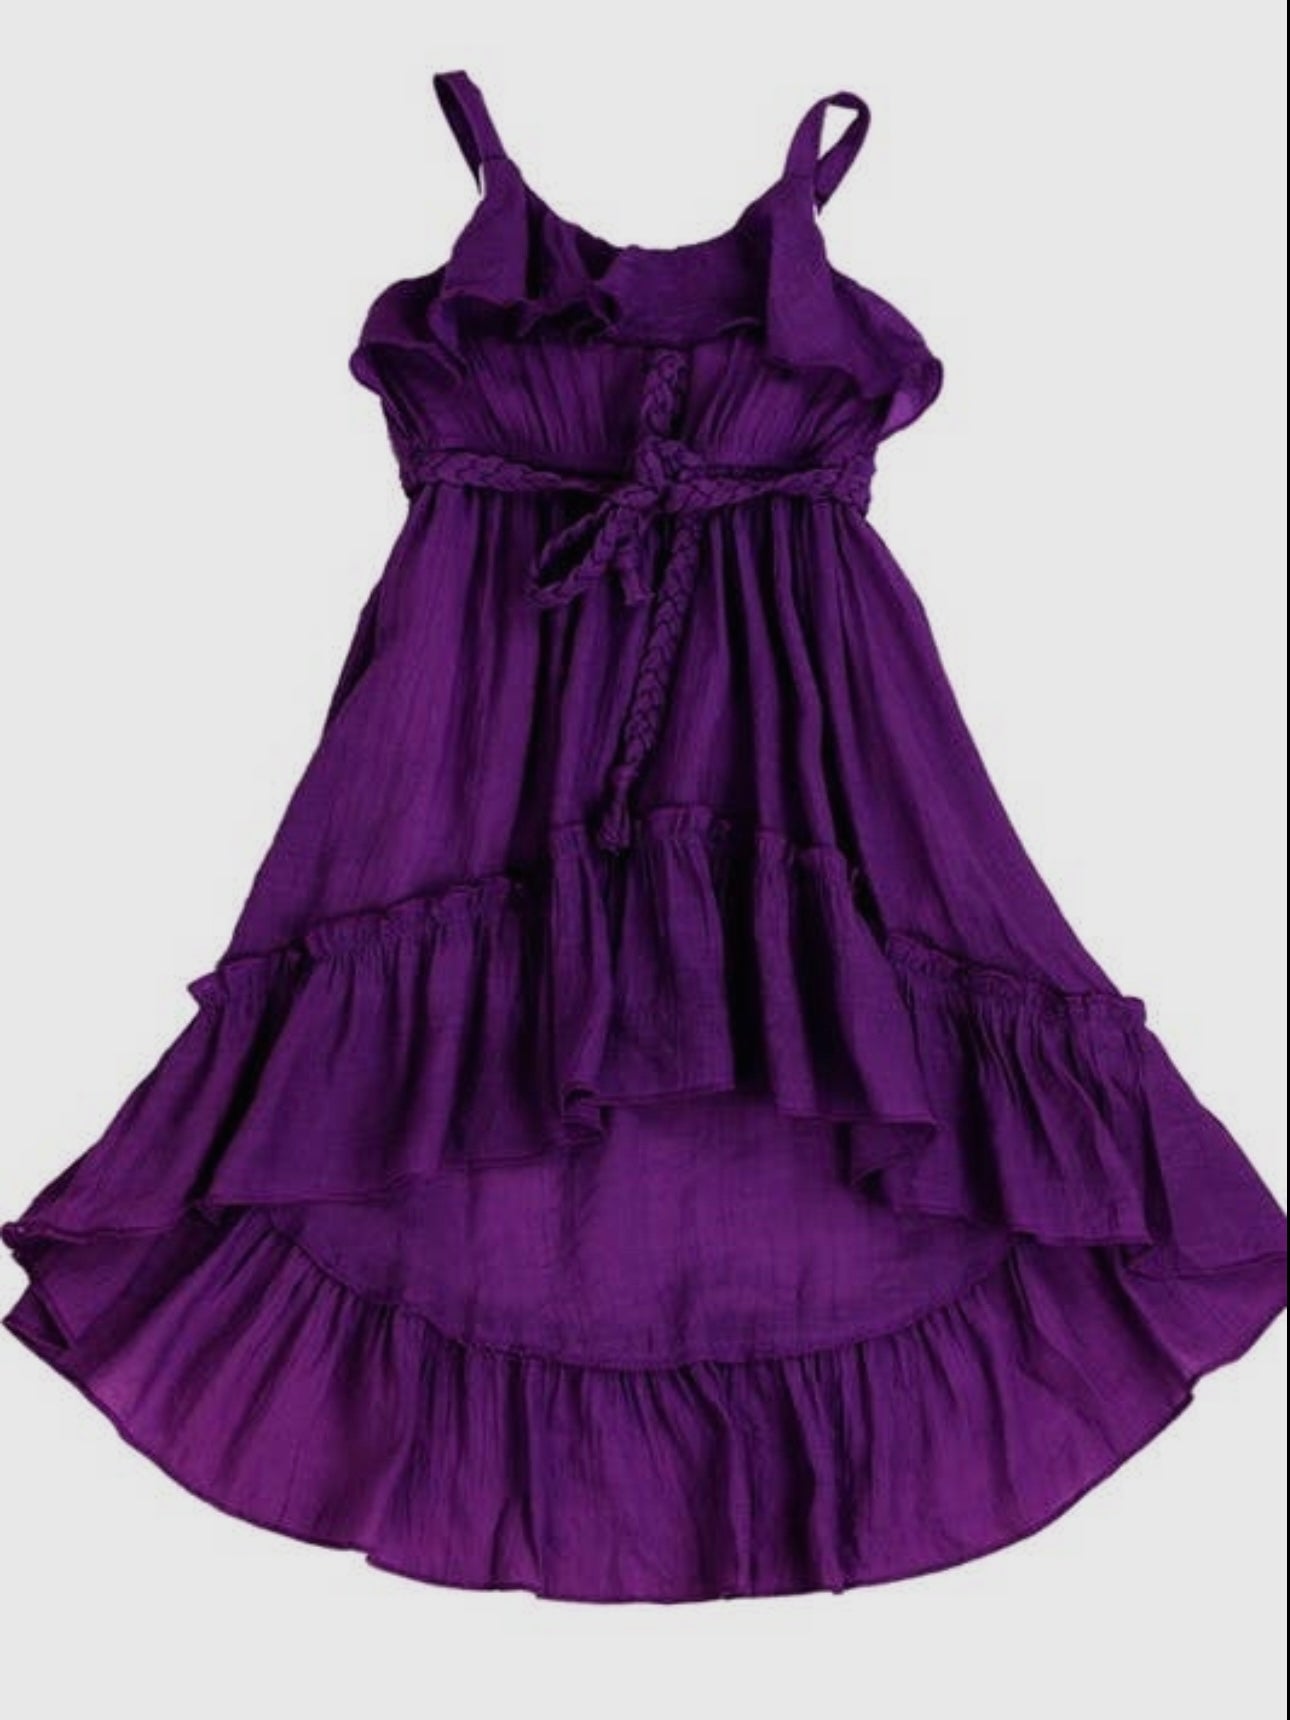 Rowan Hi-Lo Ruffled Dress.